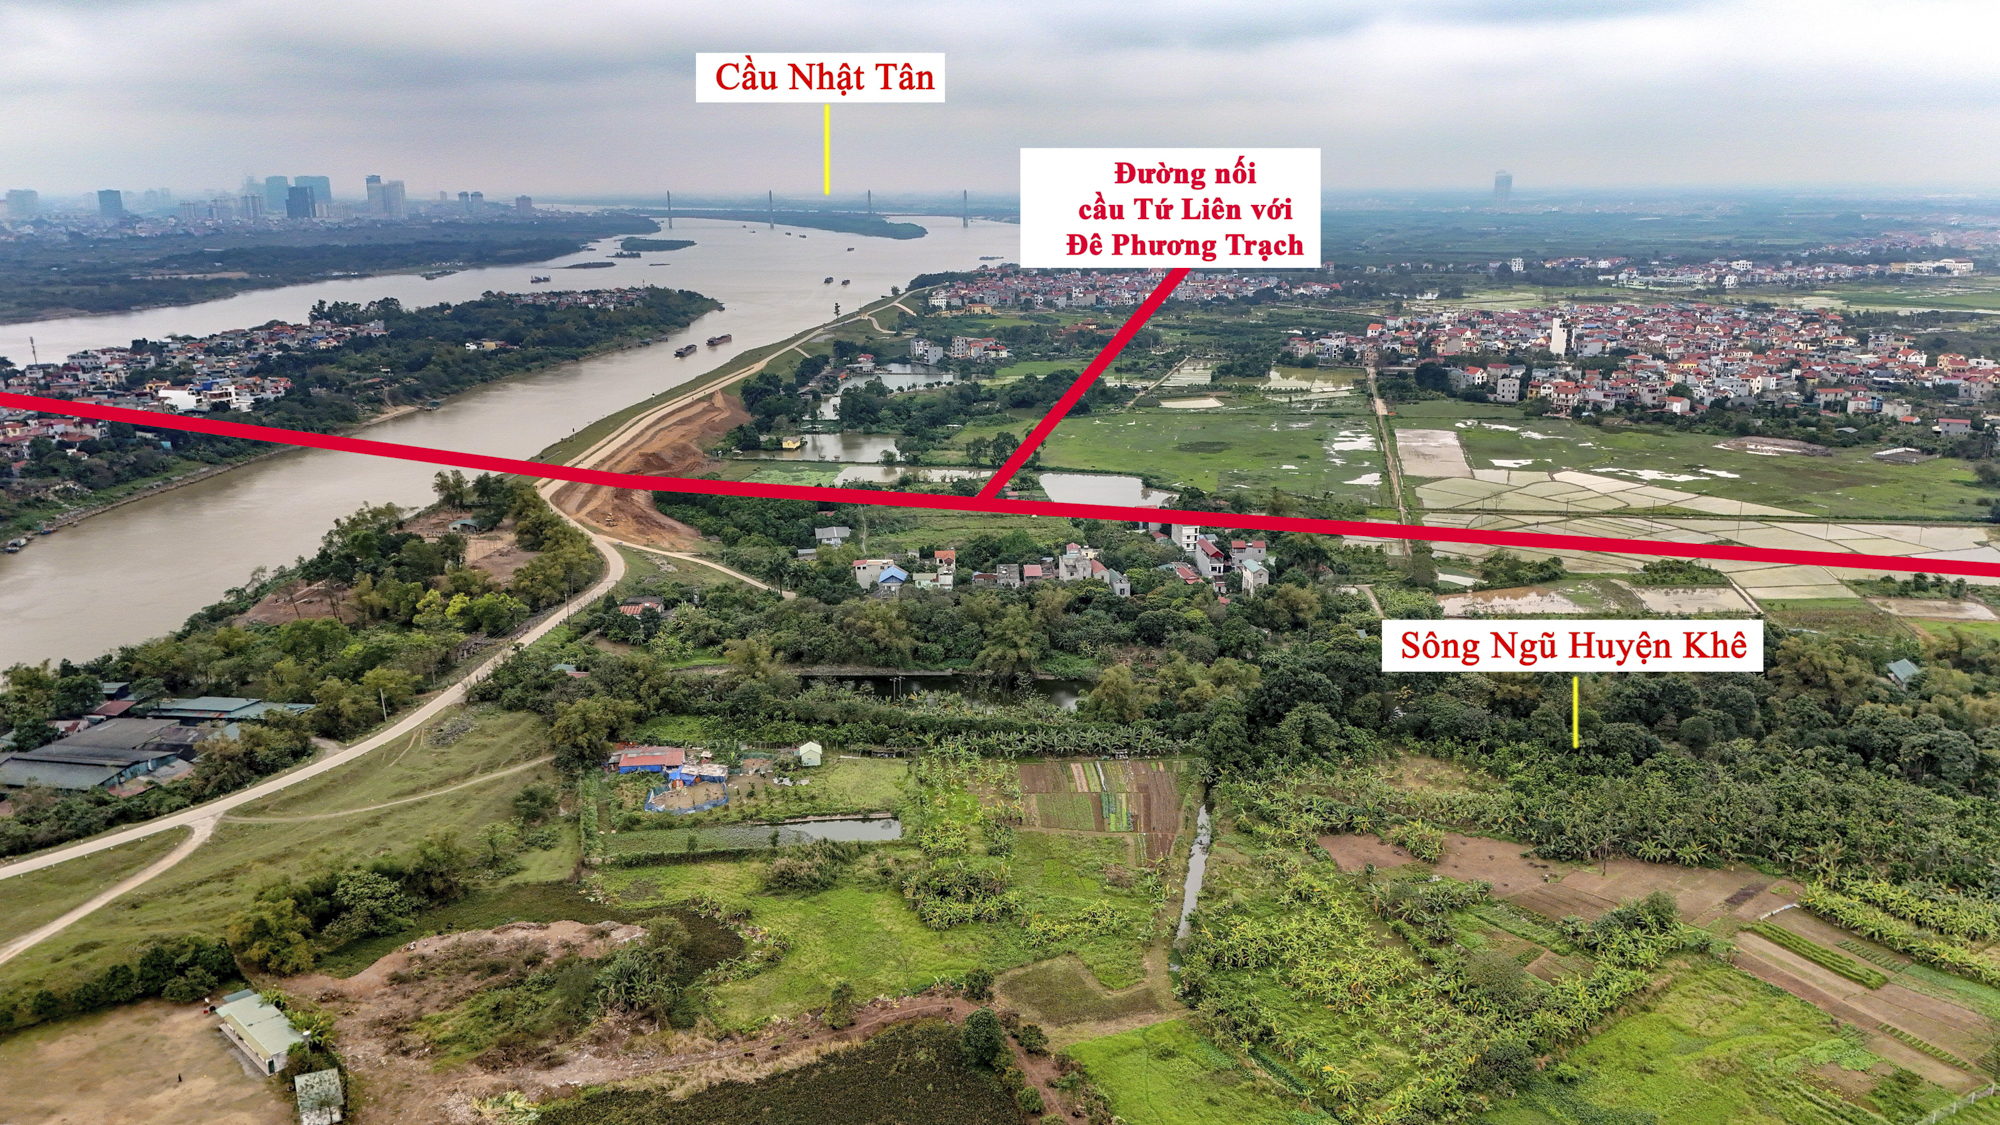 Khu vực sắp được xây cầu 20.000 tỷ, vượt qua 2 con sông lớn, đi qua đại dự án của Vinhomes ở Hà Nội- Ảnh 6.